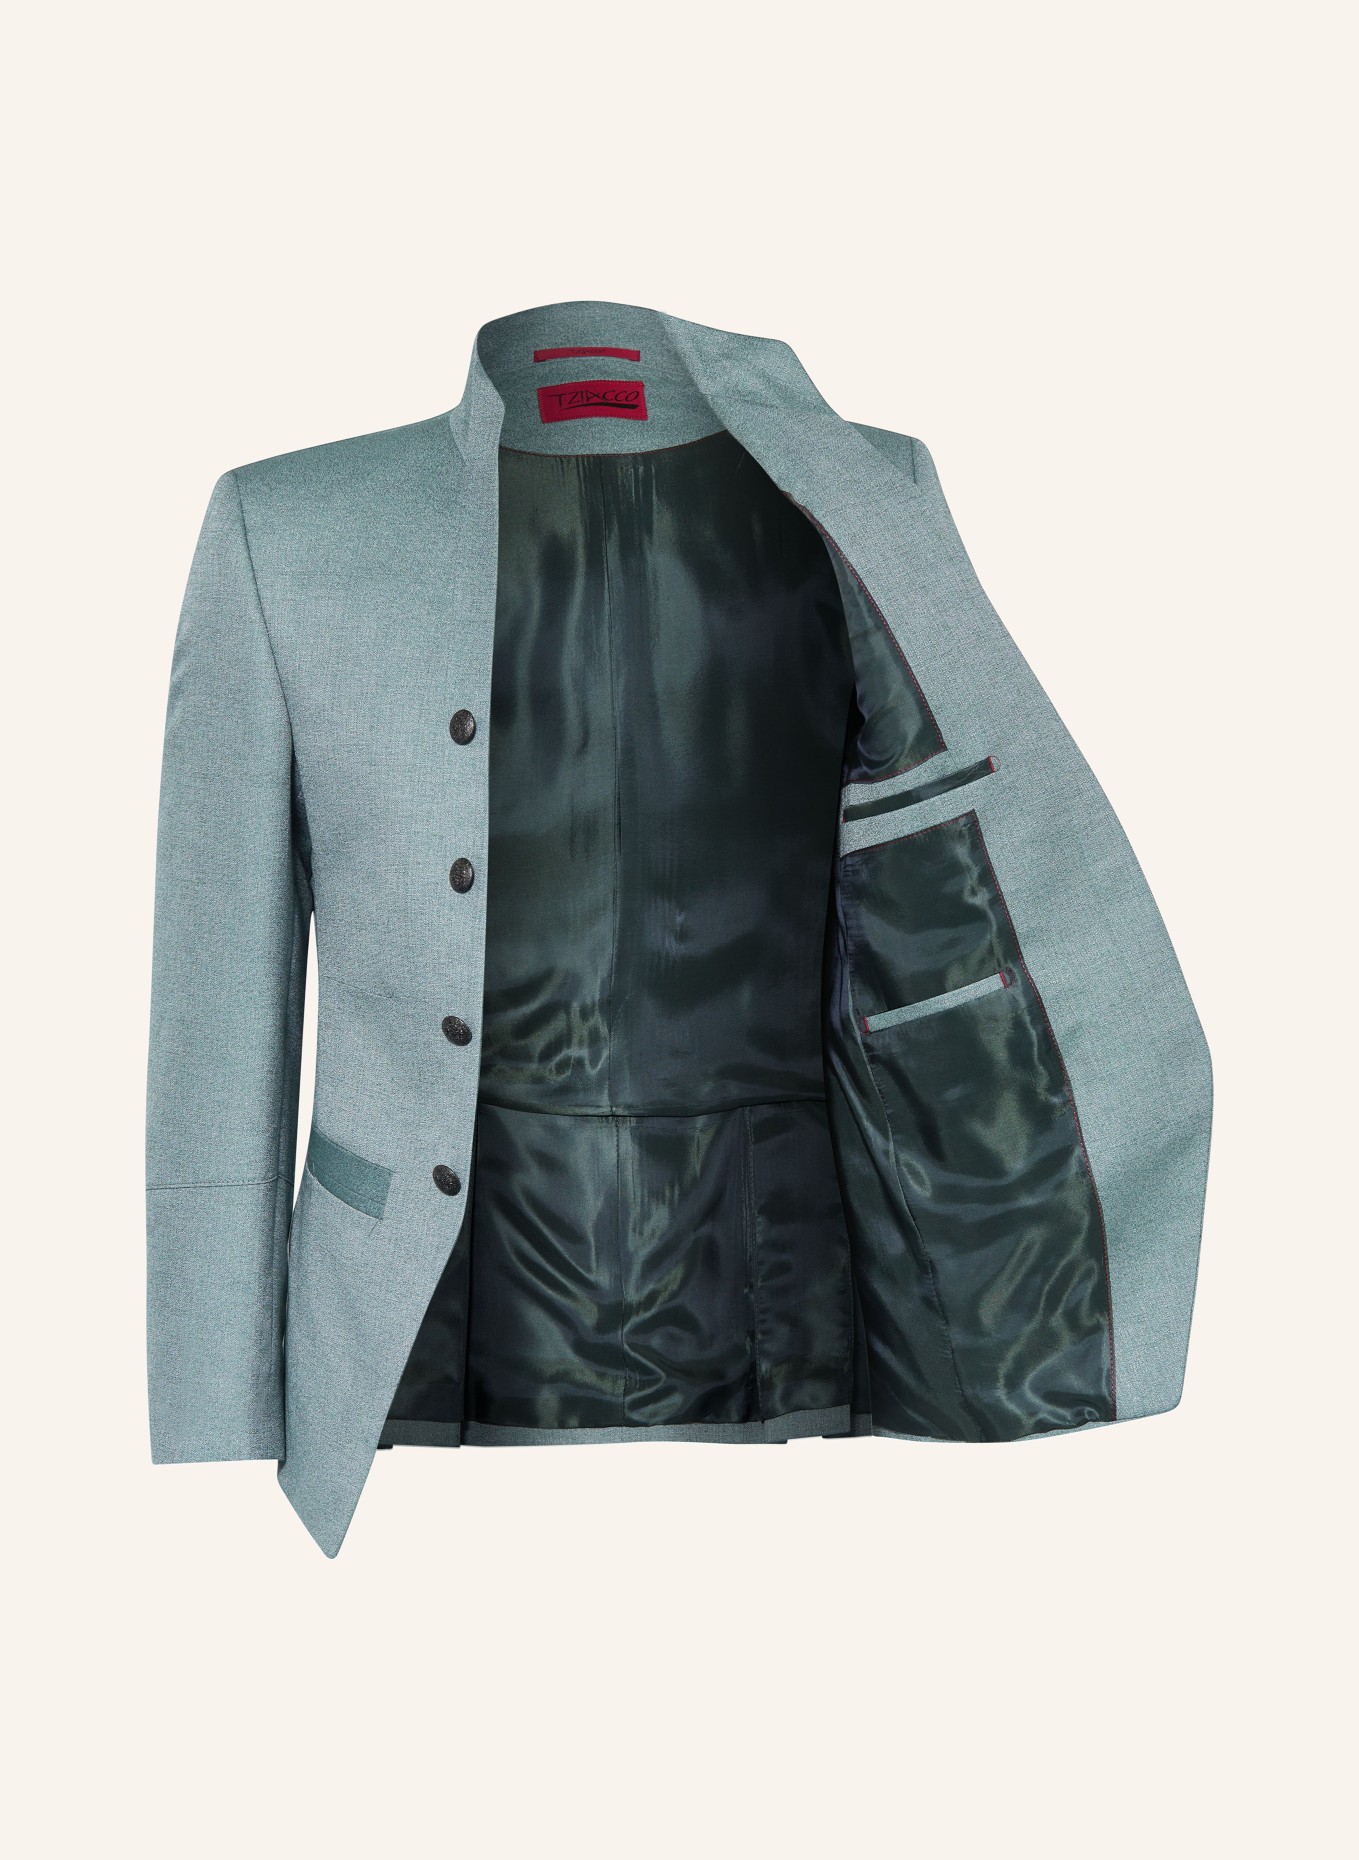 WILVORST Tailored jacket extra slim fit, Color: 045 grün (Image 4)